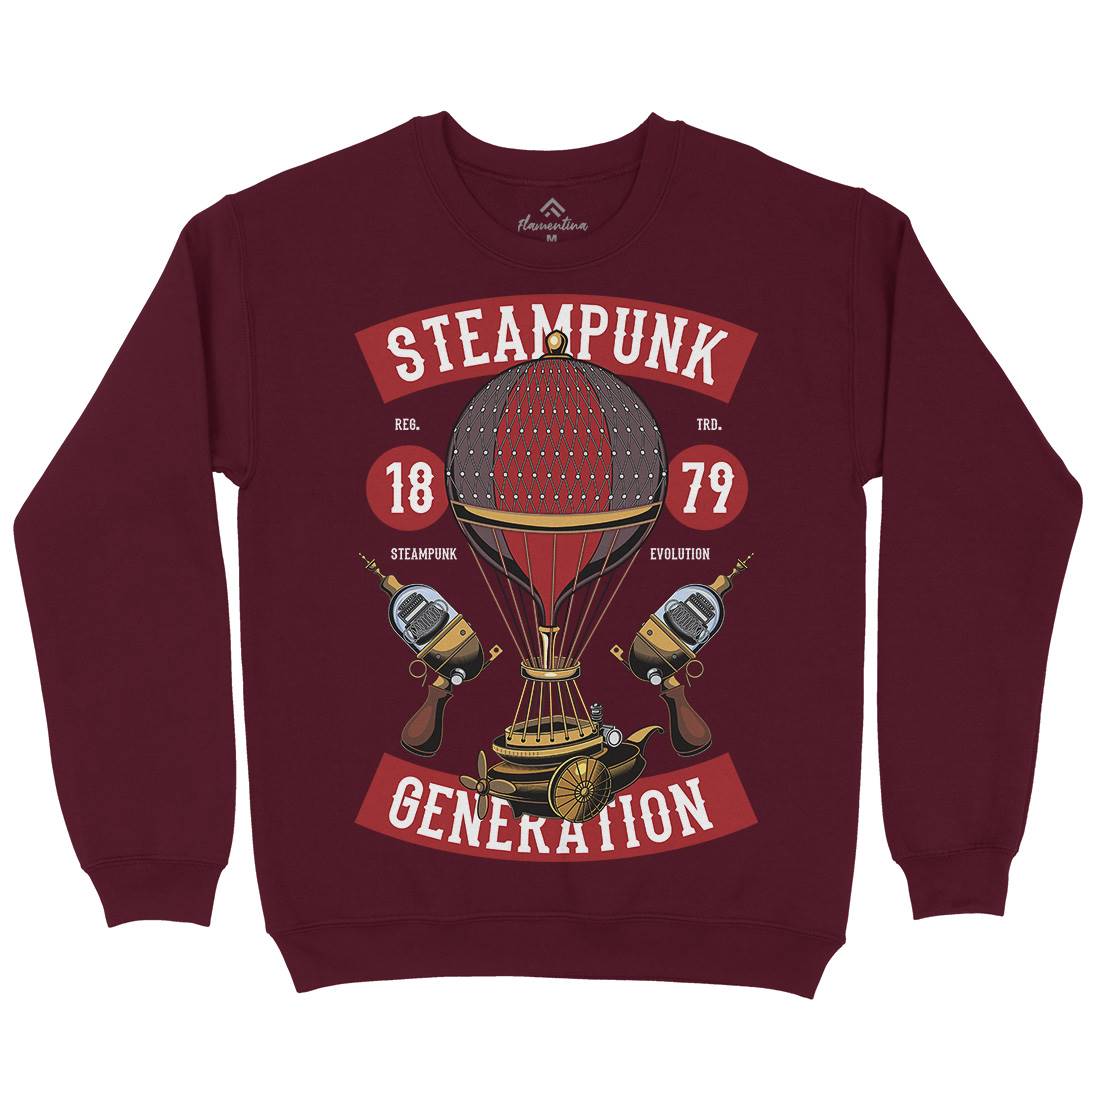 Generation Mens Crew Neck Sweatshirt Steampunk C449